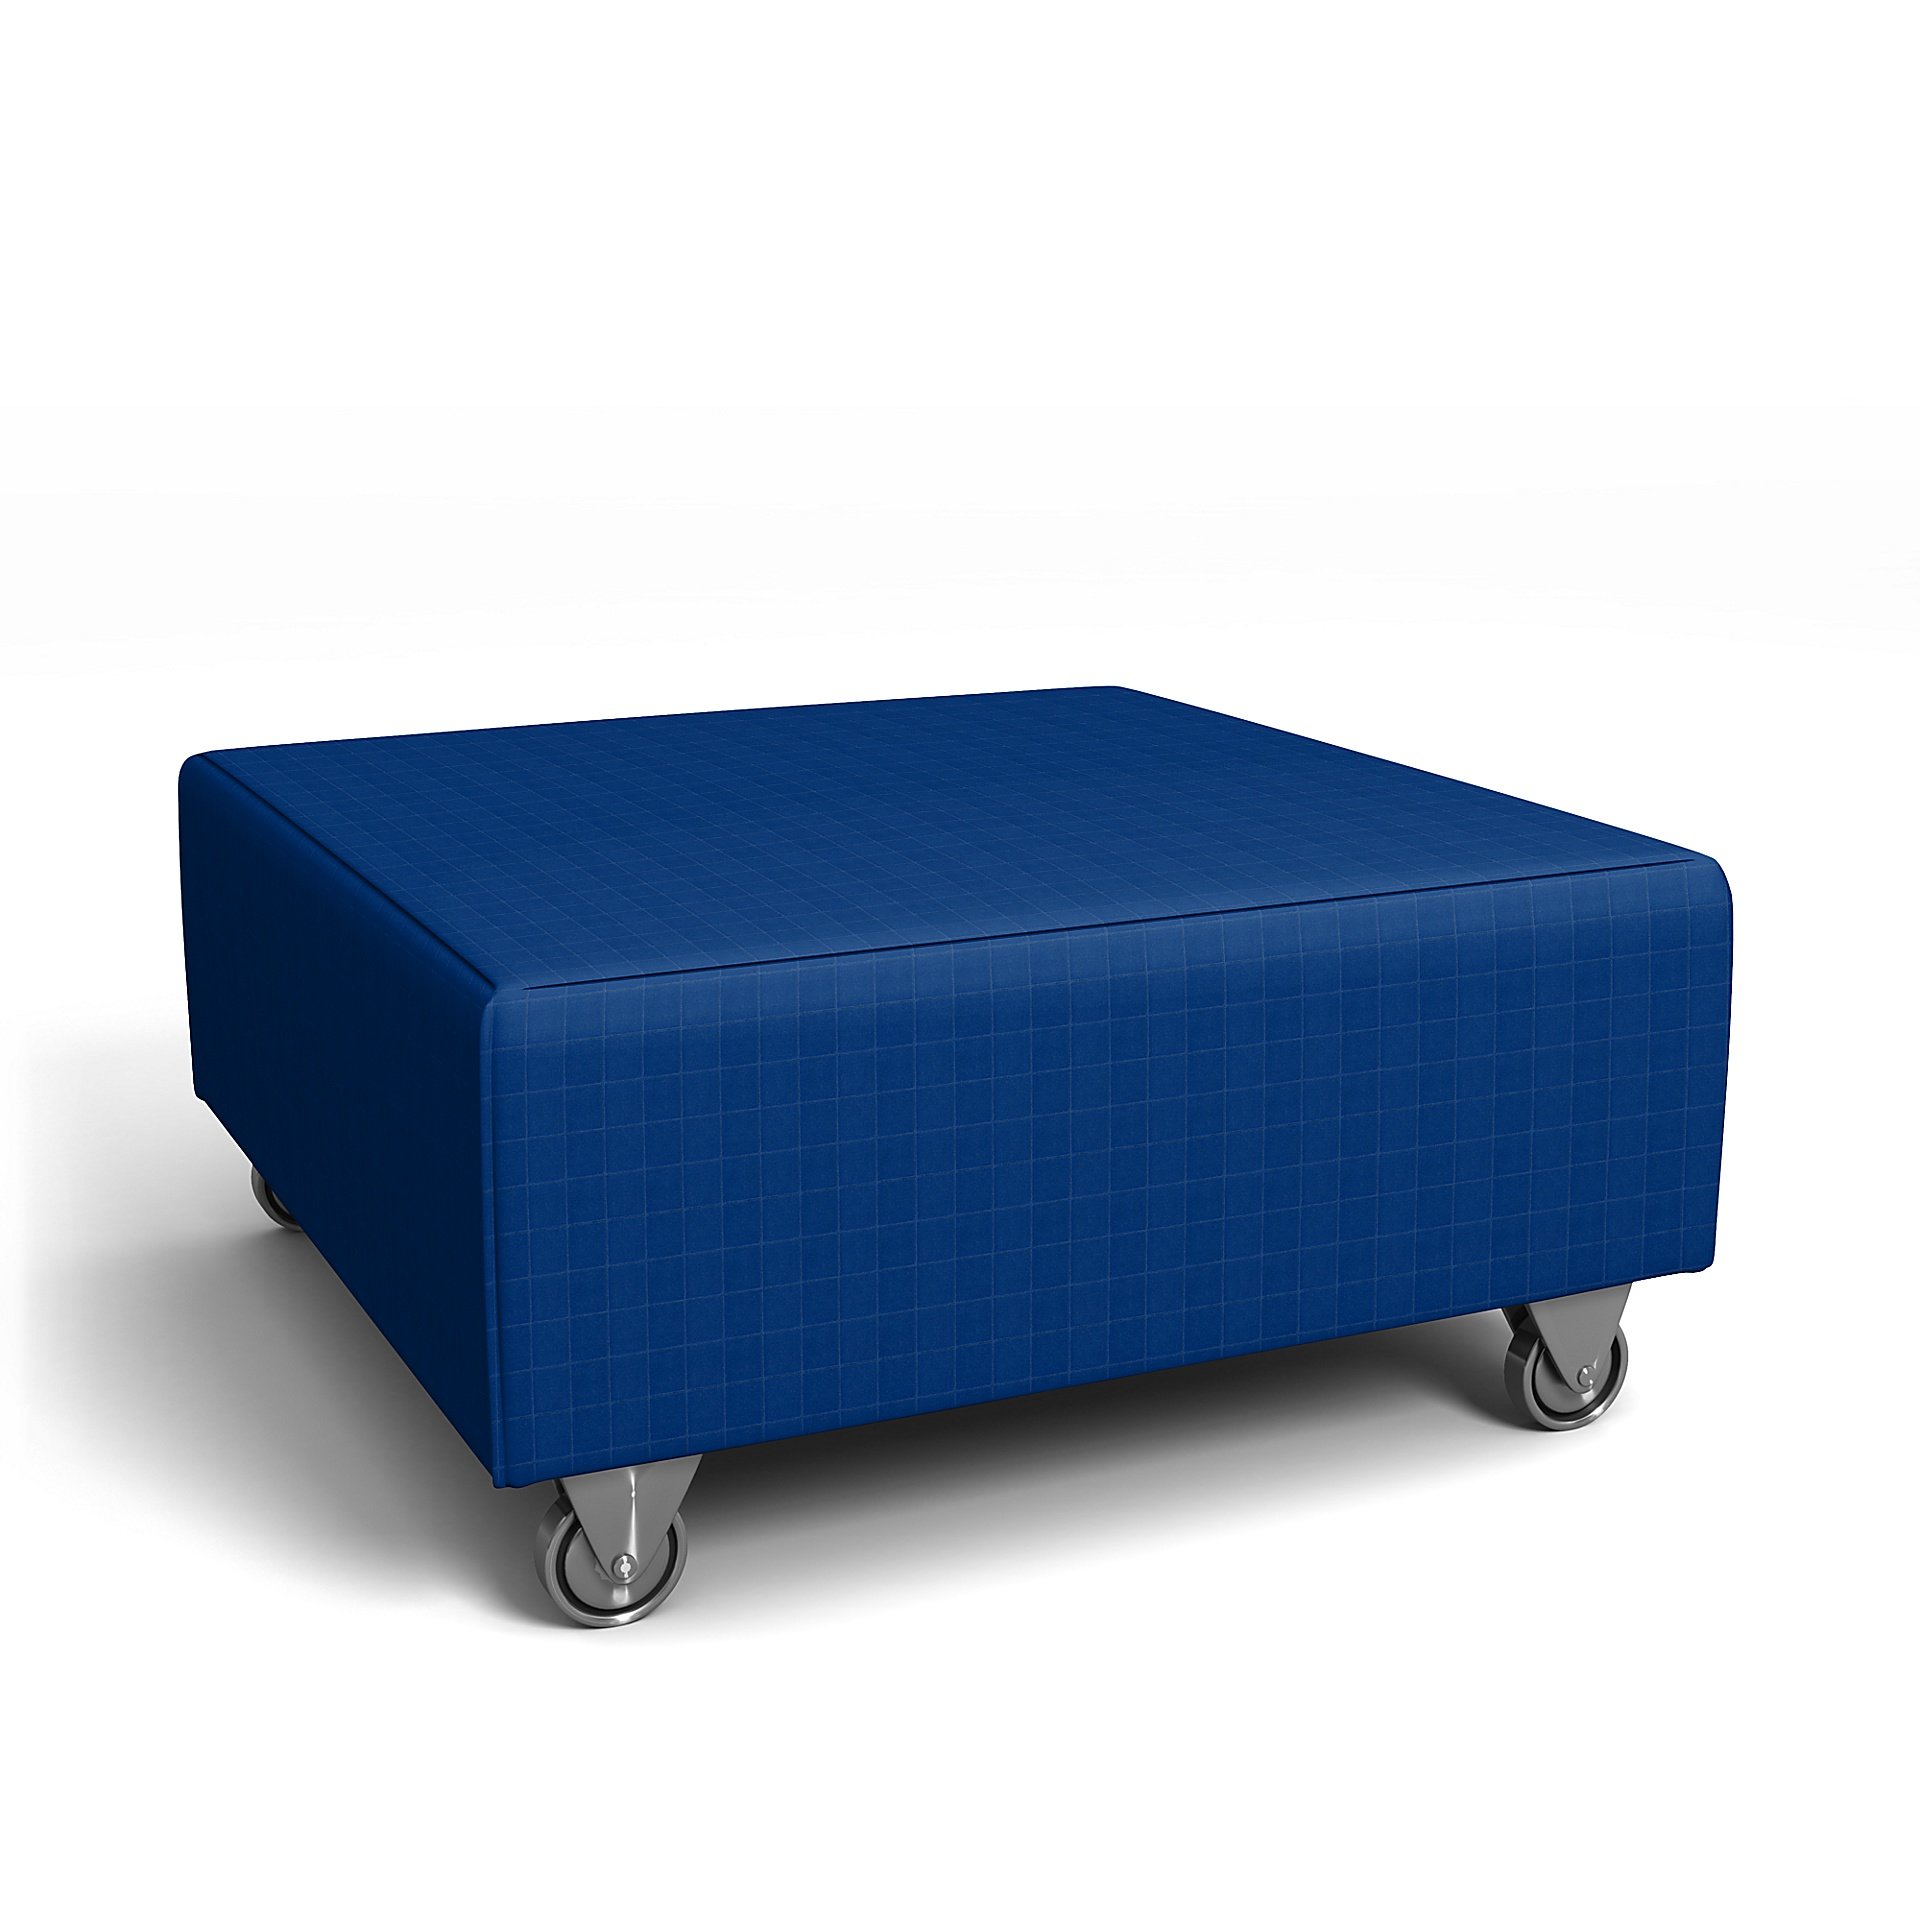 IKEA - Falsterbo Footstool Cover, Lapis Blue, Velvet - Bemz